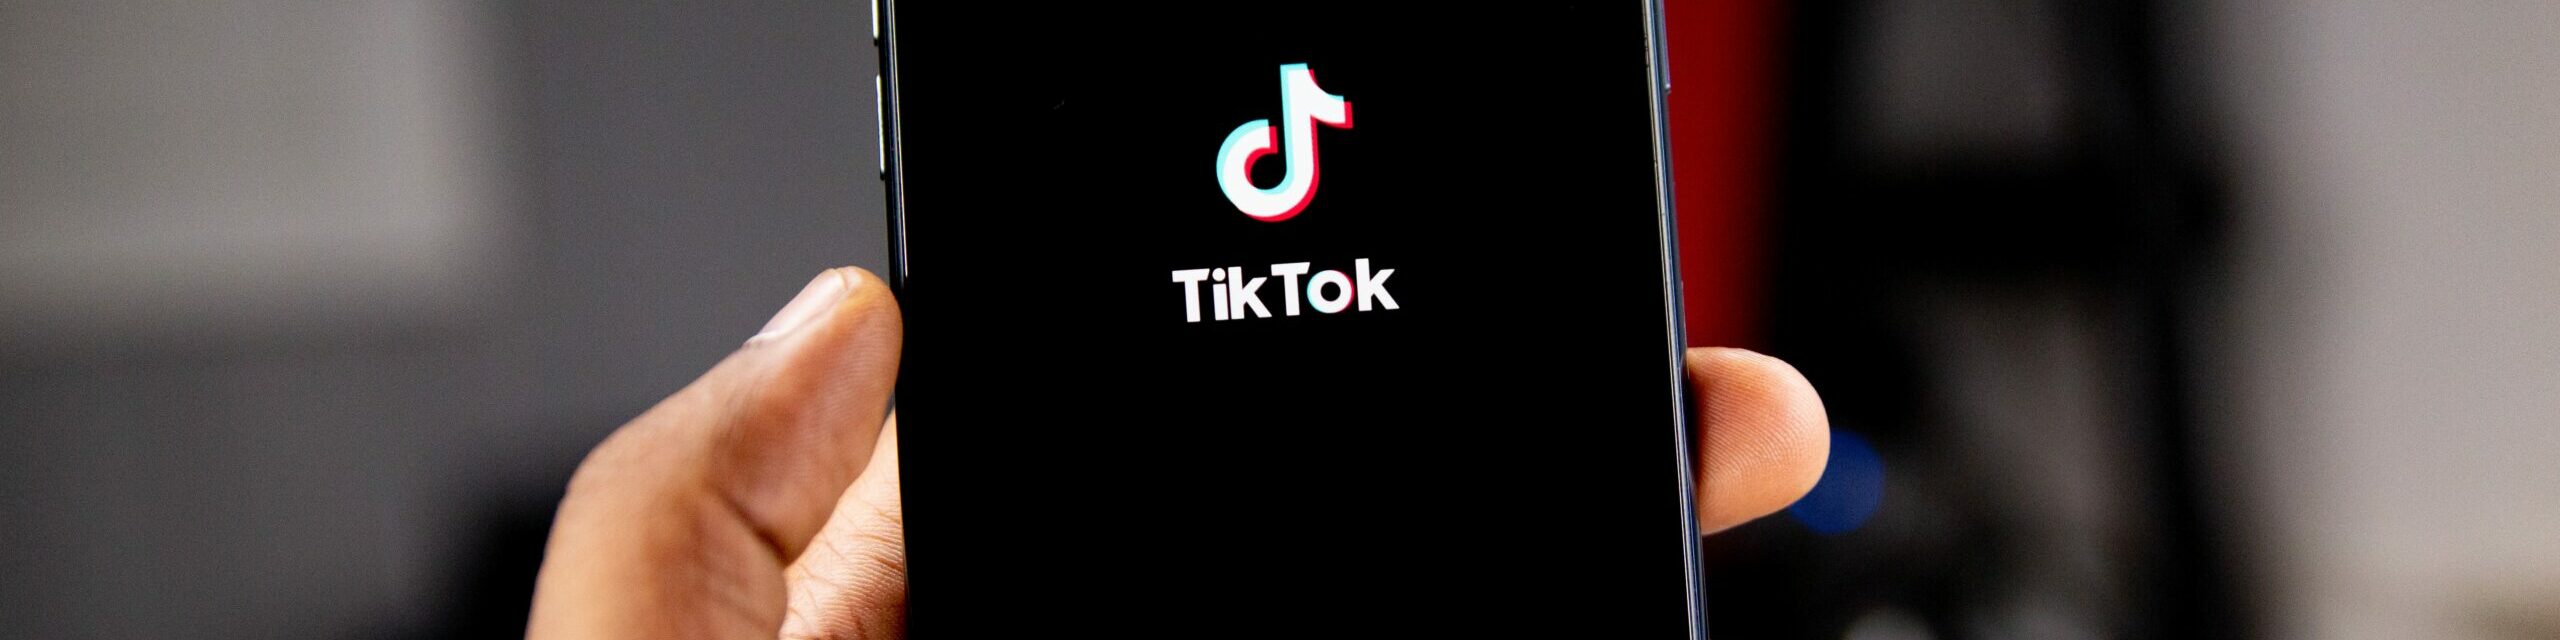 Quel nom d’utilisateur choisir sur TikTok ou Instagram ?